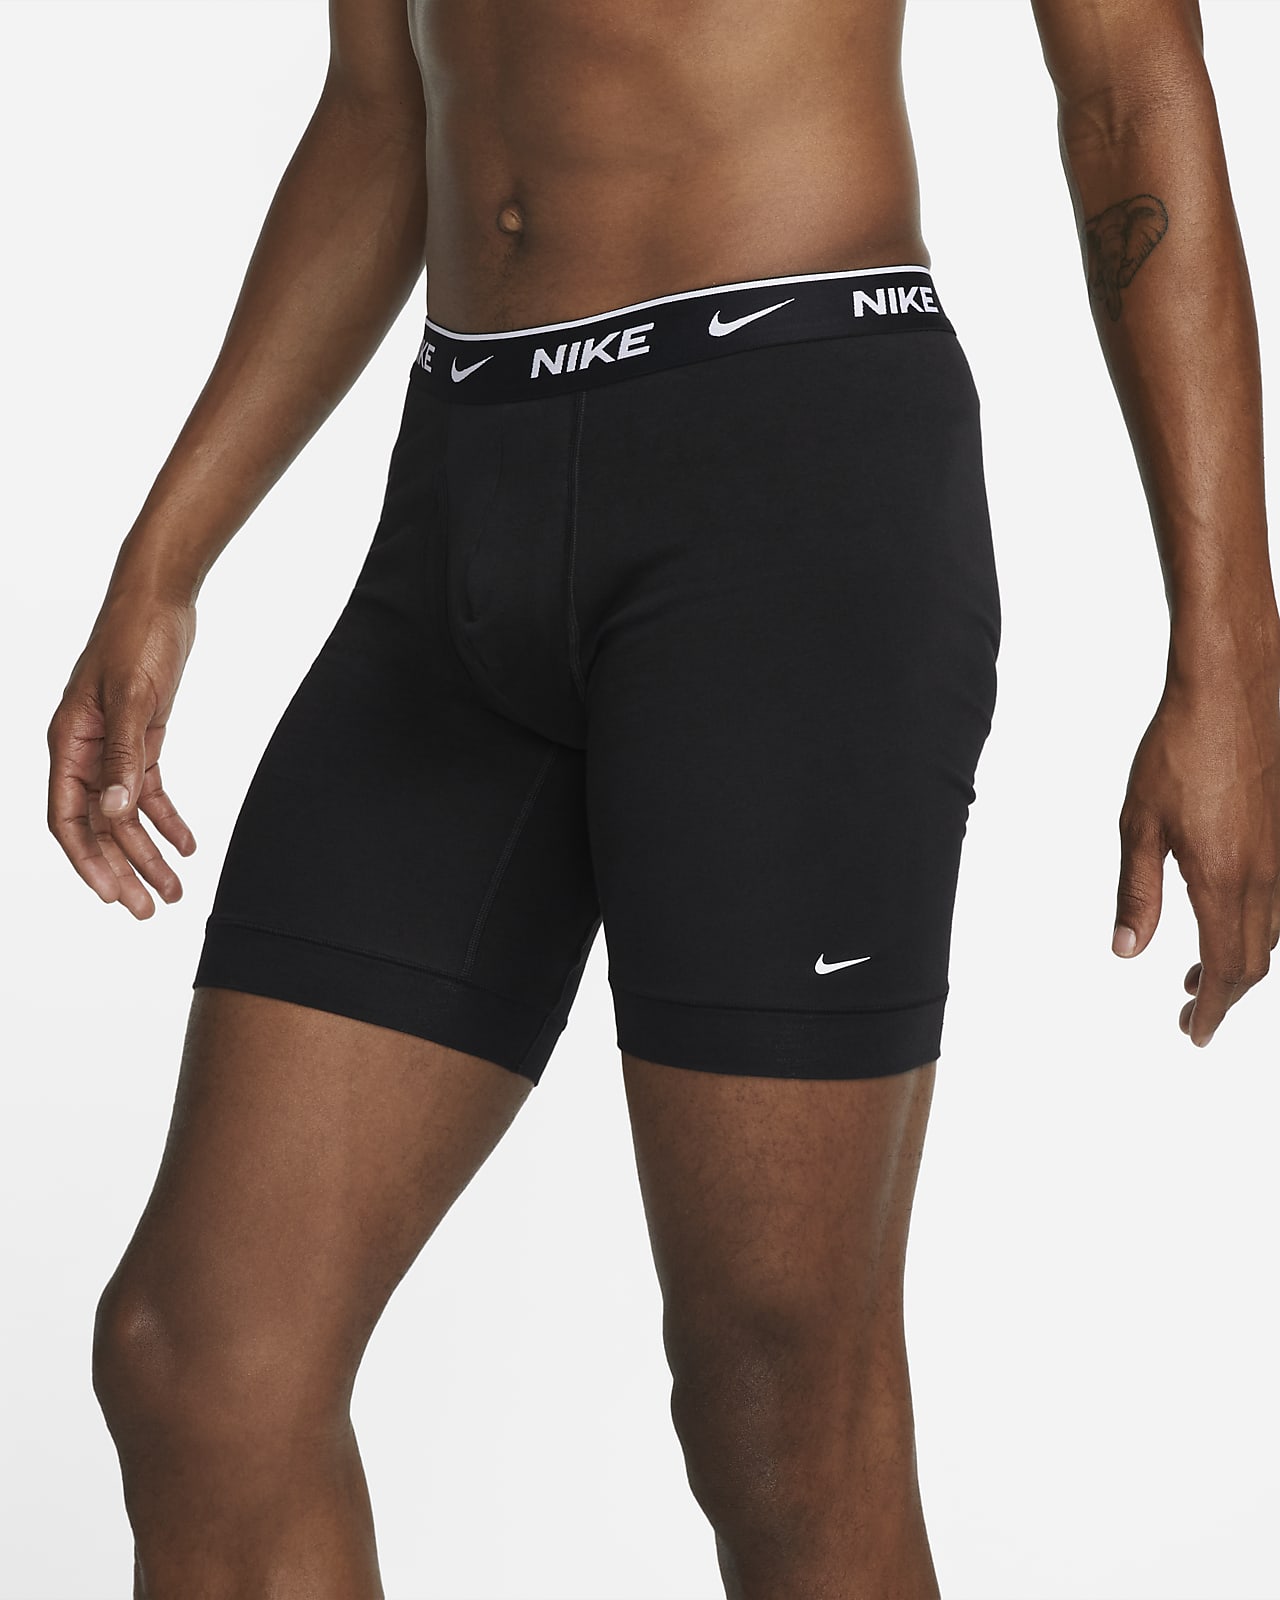 Nike Dri-FIT Essential Cotton Men's Long Briefs.